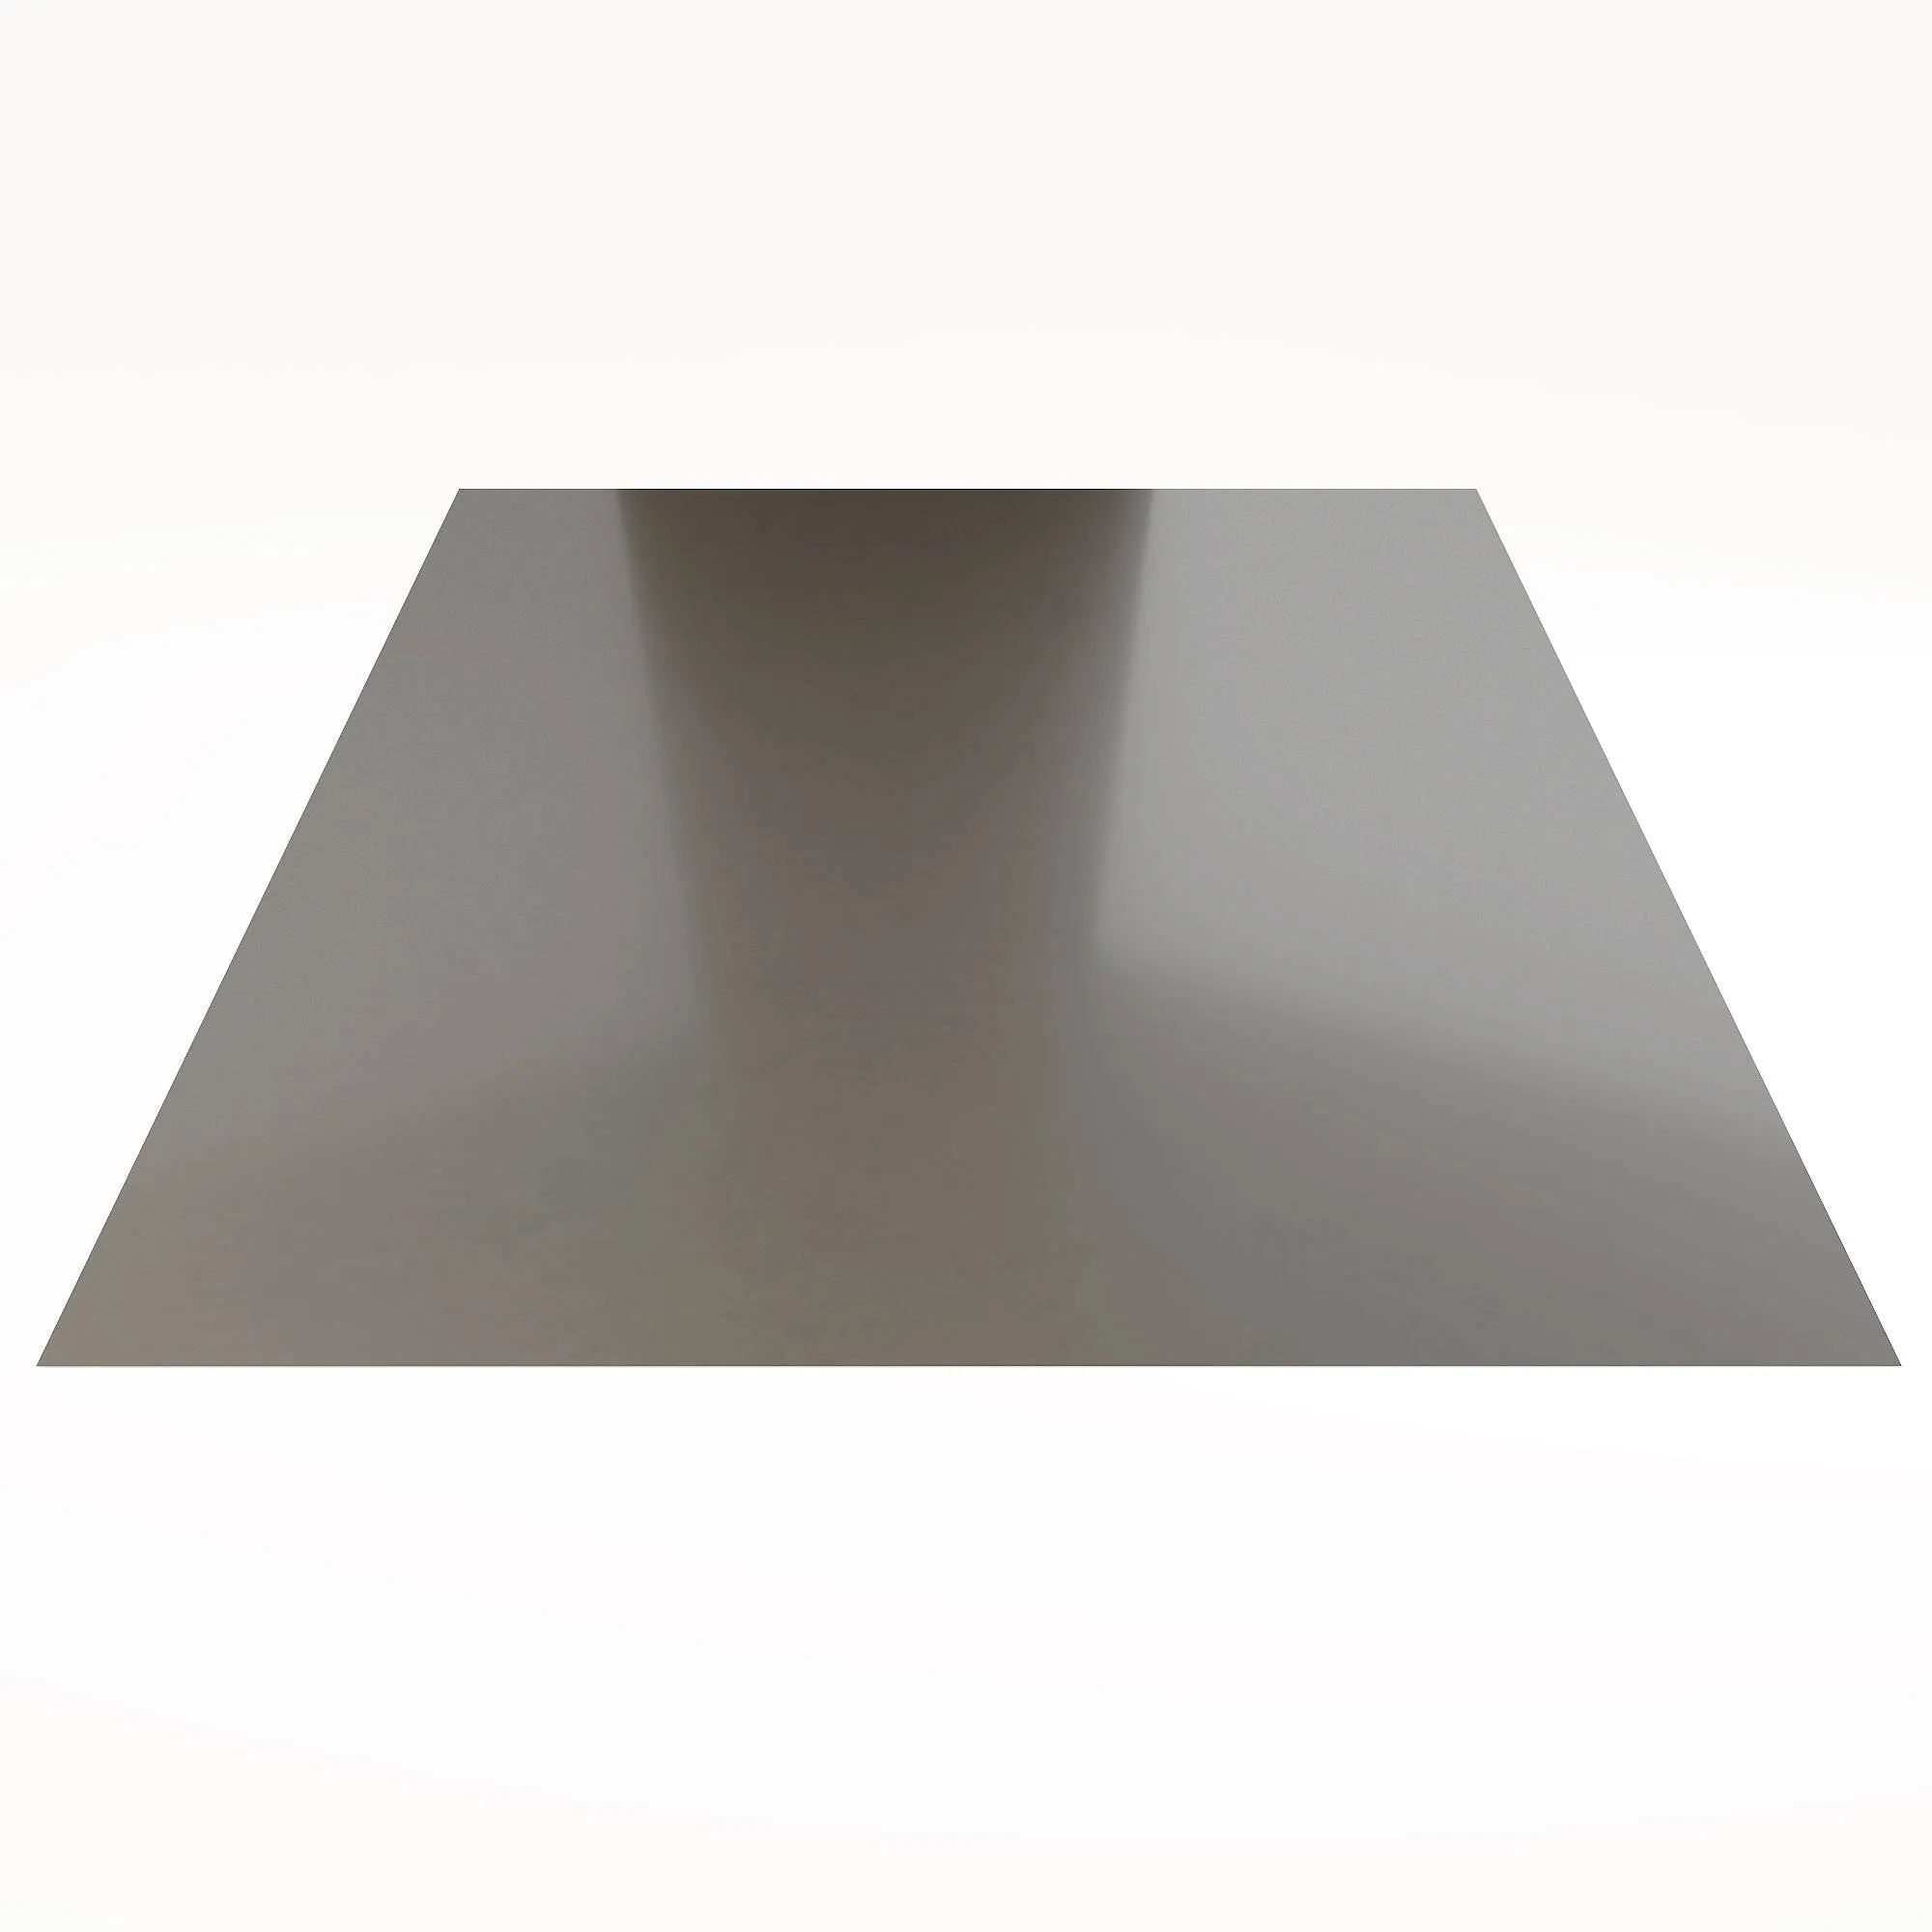 Гладкий лист Гладкий полиэстер RAL 7004 (Серый) 2000*1250*0,5 односторонний ламинированный